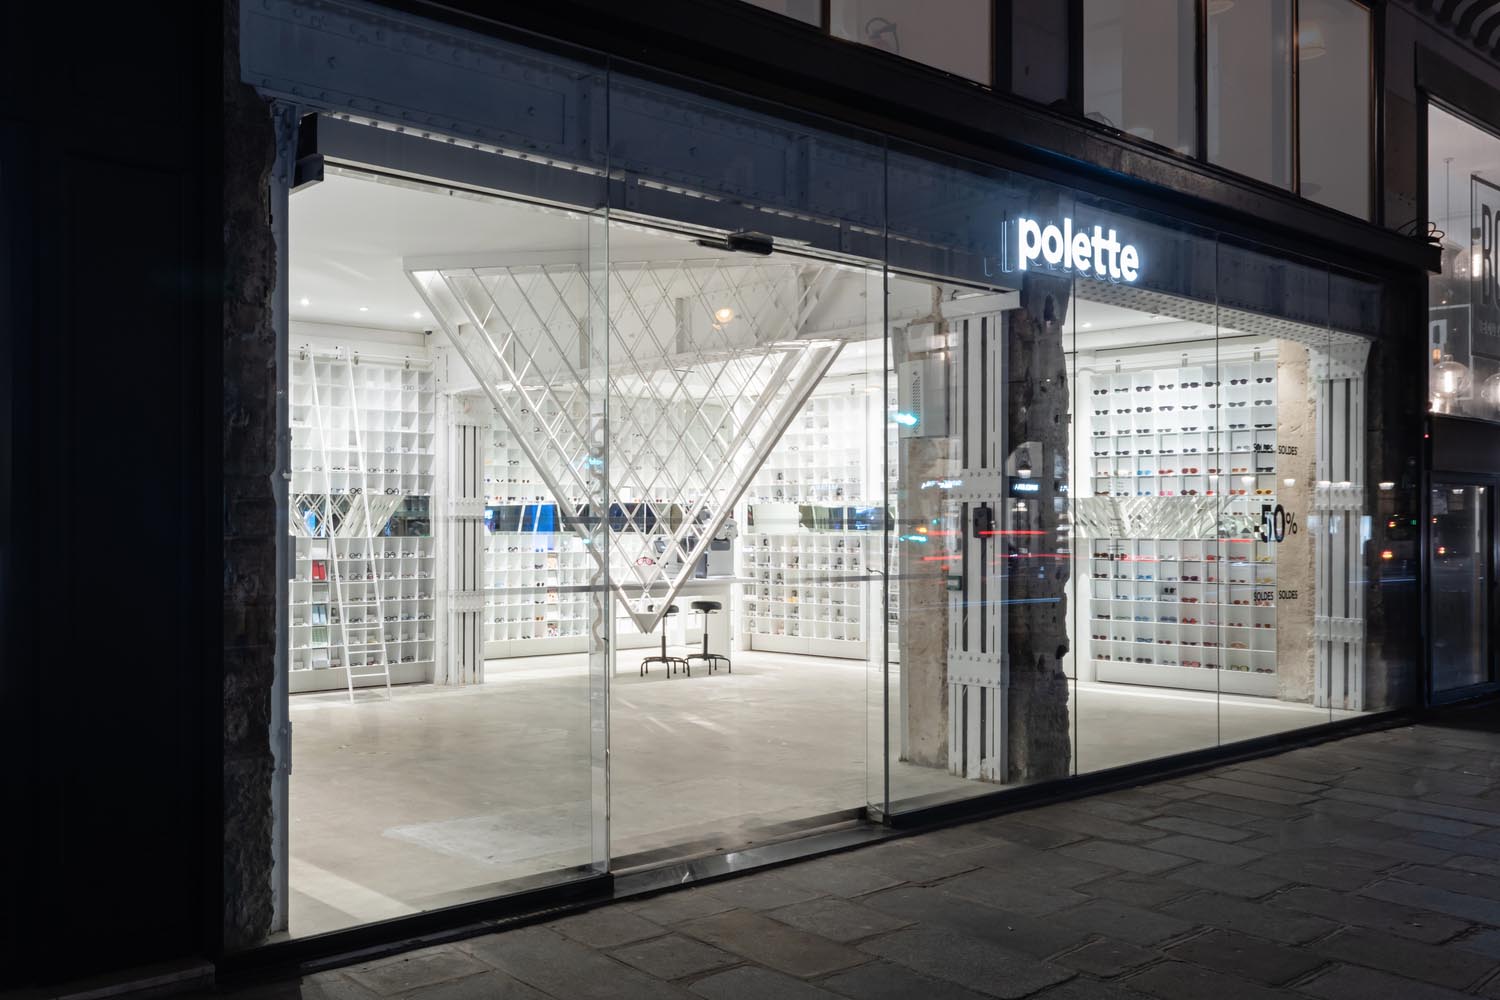 zU-studio,Polette,眼鏡零售店設計,眼鏡店設計,零售店設計,線下體驗店設計,Polette眼鏡店,眼鏡店設計案例